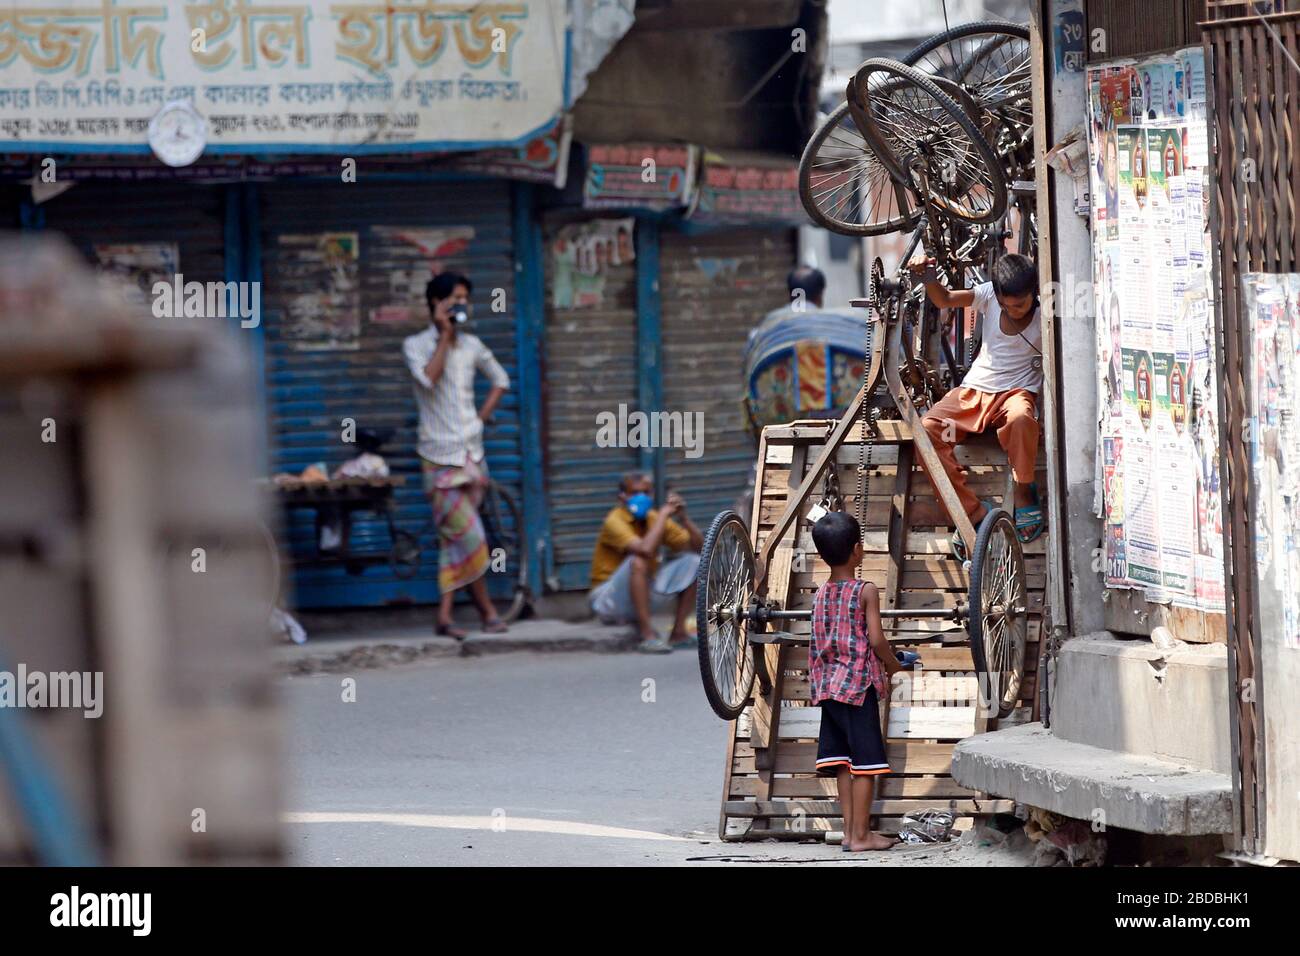 Während die Blockierung im ganzen Land andauert, kann selbst die geschäftige Gegend um Old Dhaka Bongshal einige faule Nachmittage erleben. Zwei Kinder spielen mit Rikscha-Van Stockfoto